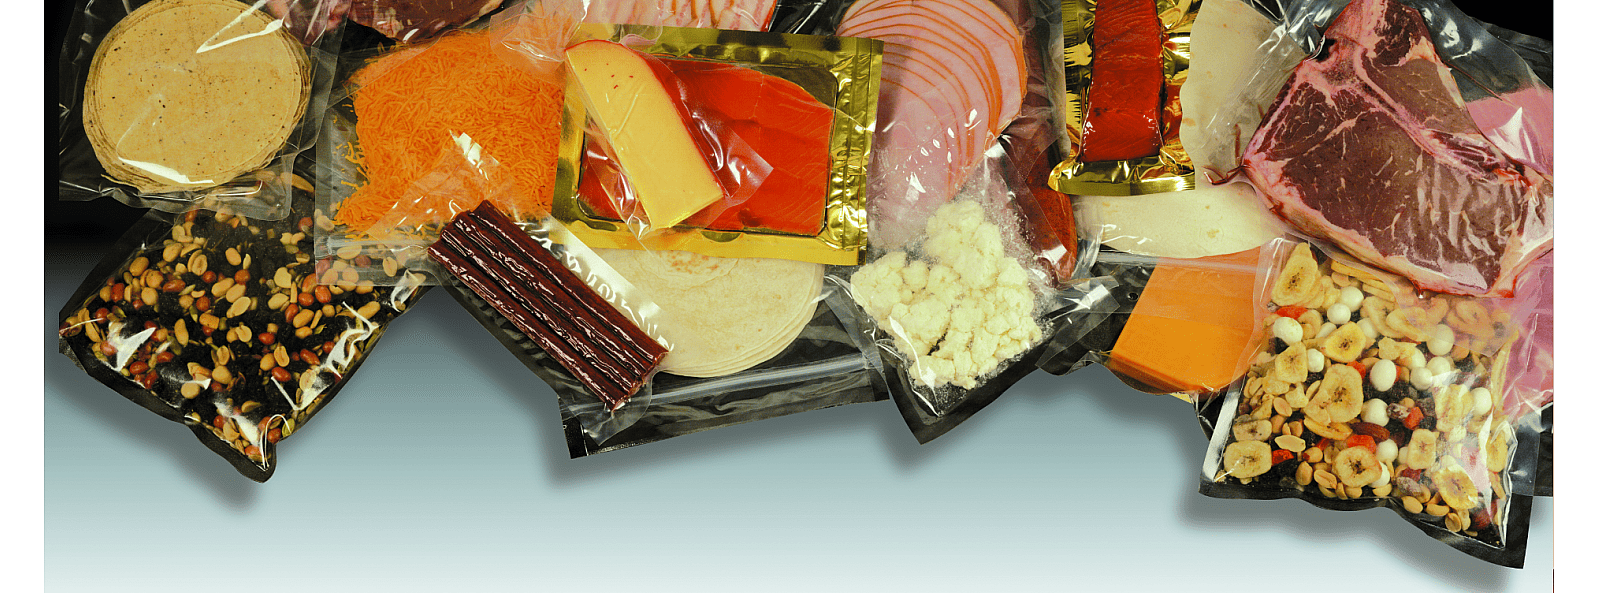 Vi är Sveriges främsta partner för konsumentnära förpackningar inom livsmedel